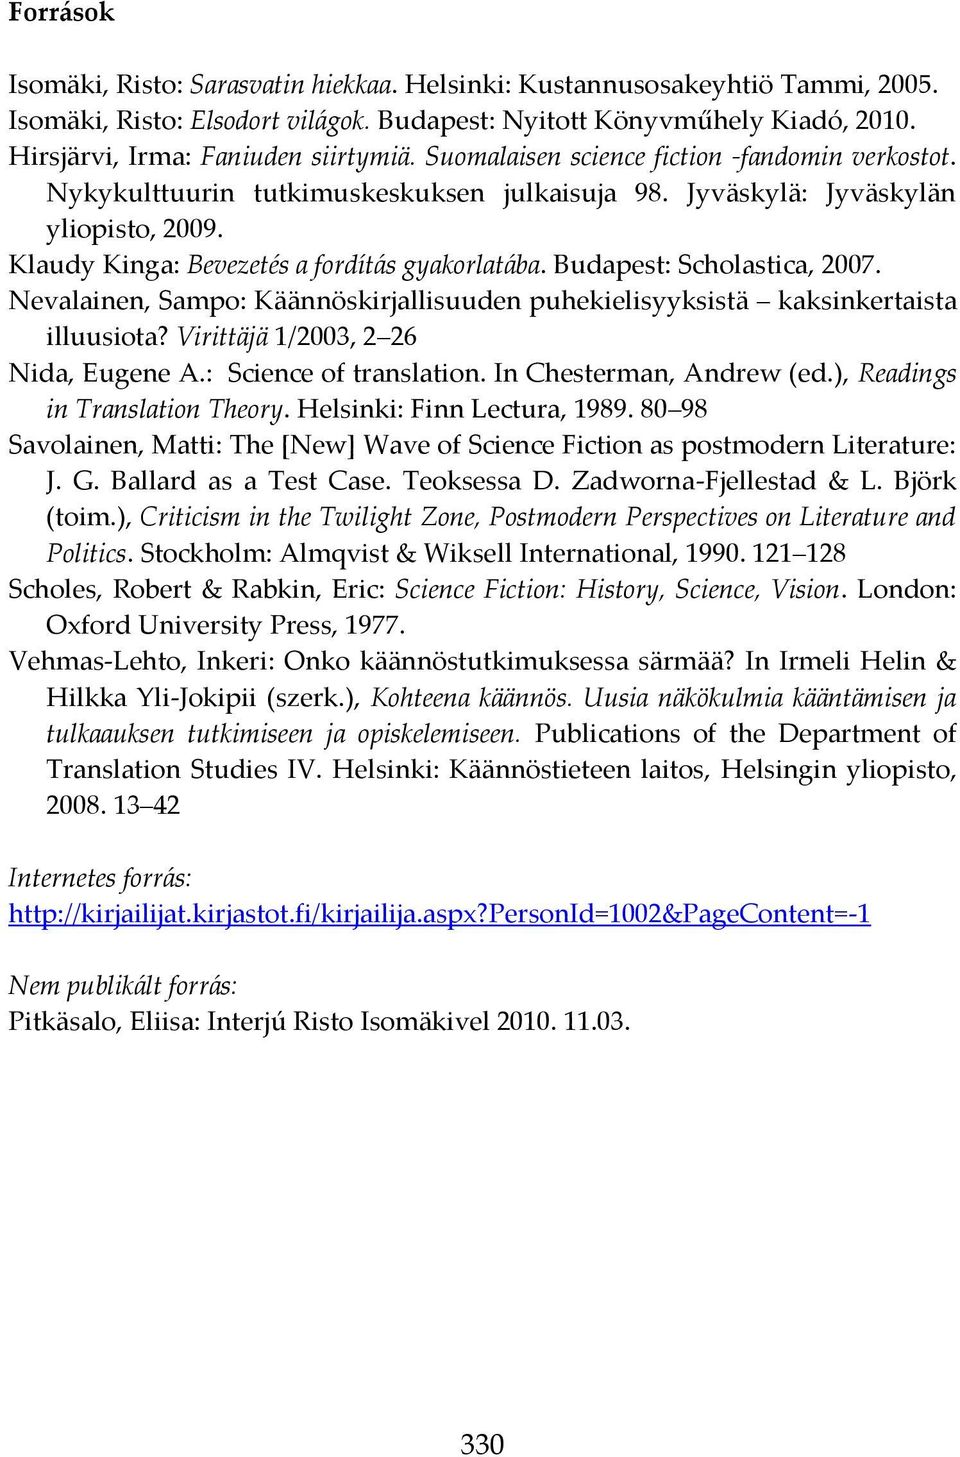 Klaudy Kinga: Bevezetés a fordít{s gyakorlat{ba. Budapest: Scholastica, 2007. Nevalainen, Sampo: Käännöskirjallisuuden puhekielisyyksistä kaksinkertaista illuusiota?